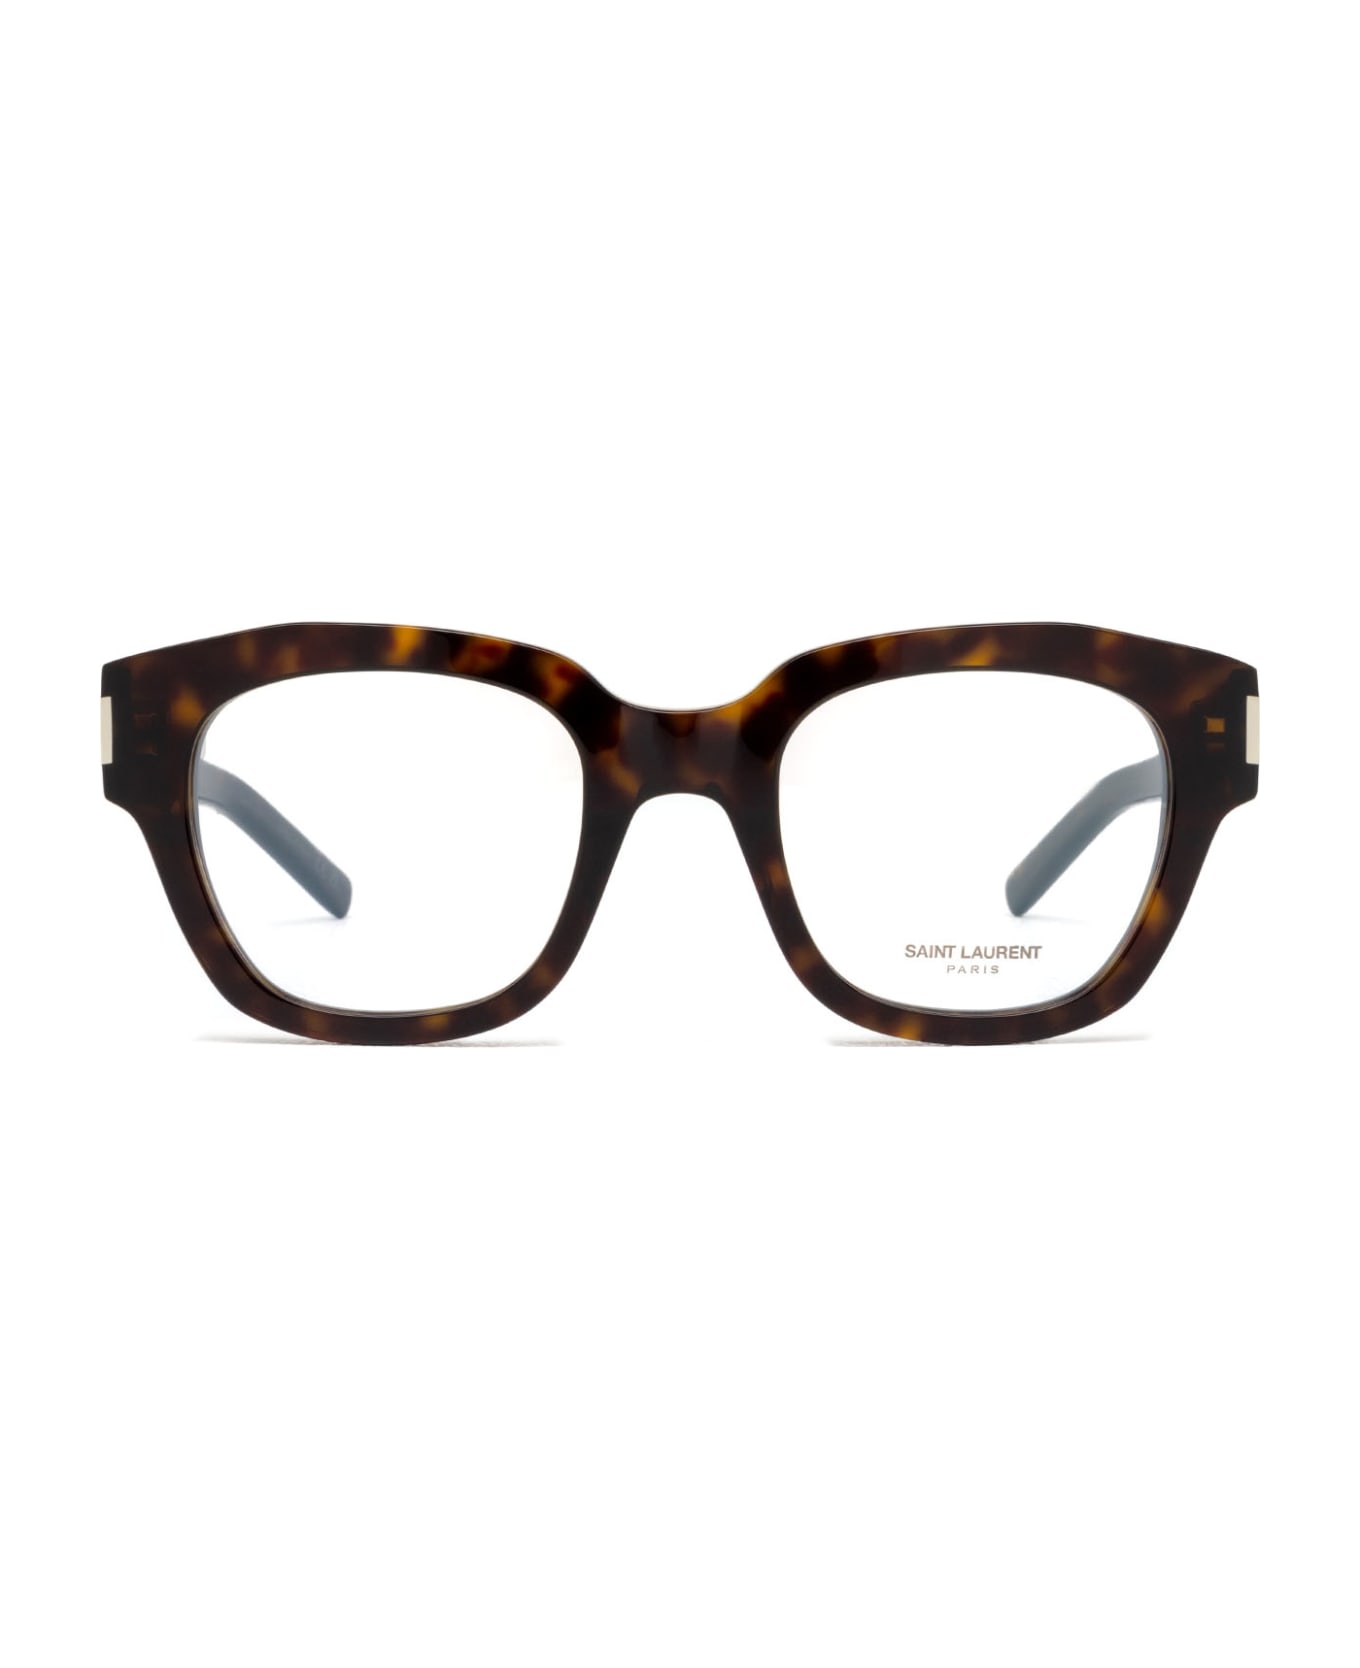 Saint Laurent Eyewear Sl 640 Havana Glasses - Havana アイウェア